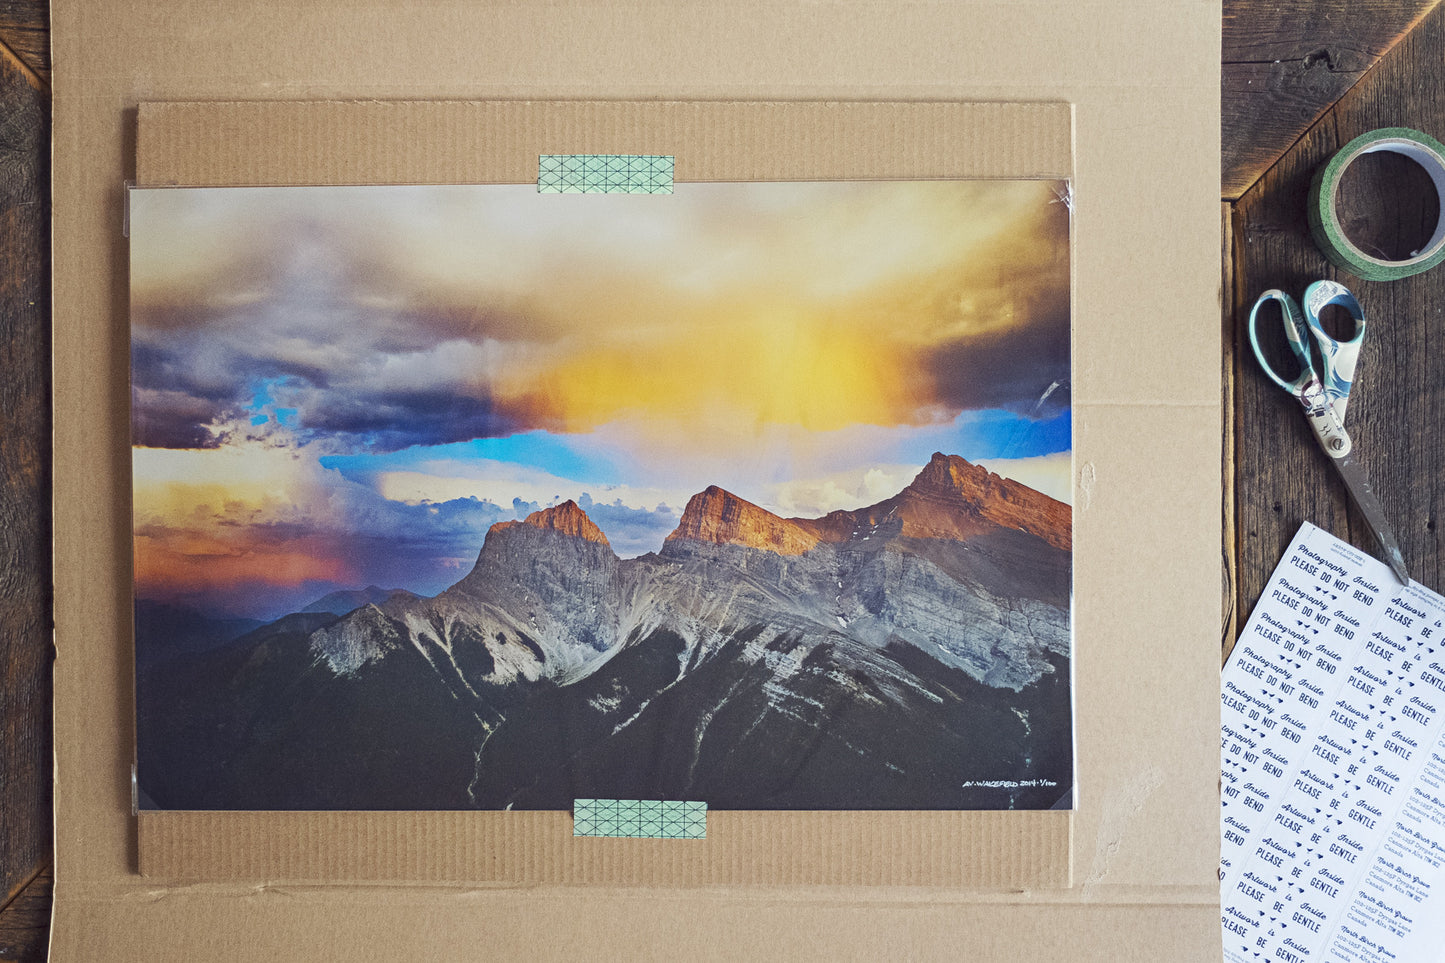 Las montañas están llamando<br> Islandia<br> Archivo de edición limitada<br> Impresión cromogénica de bellas artes